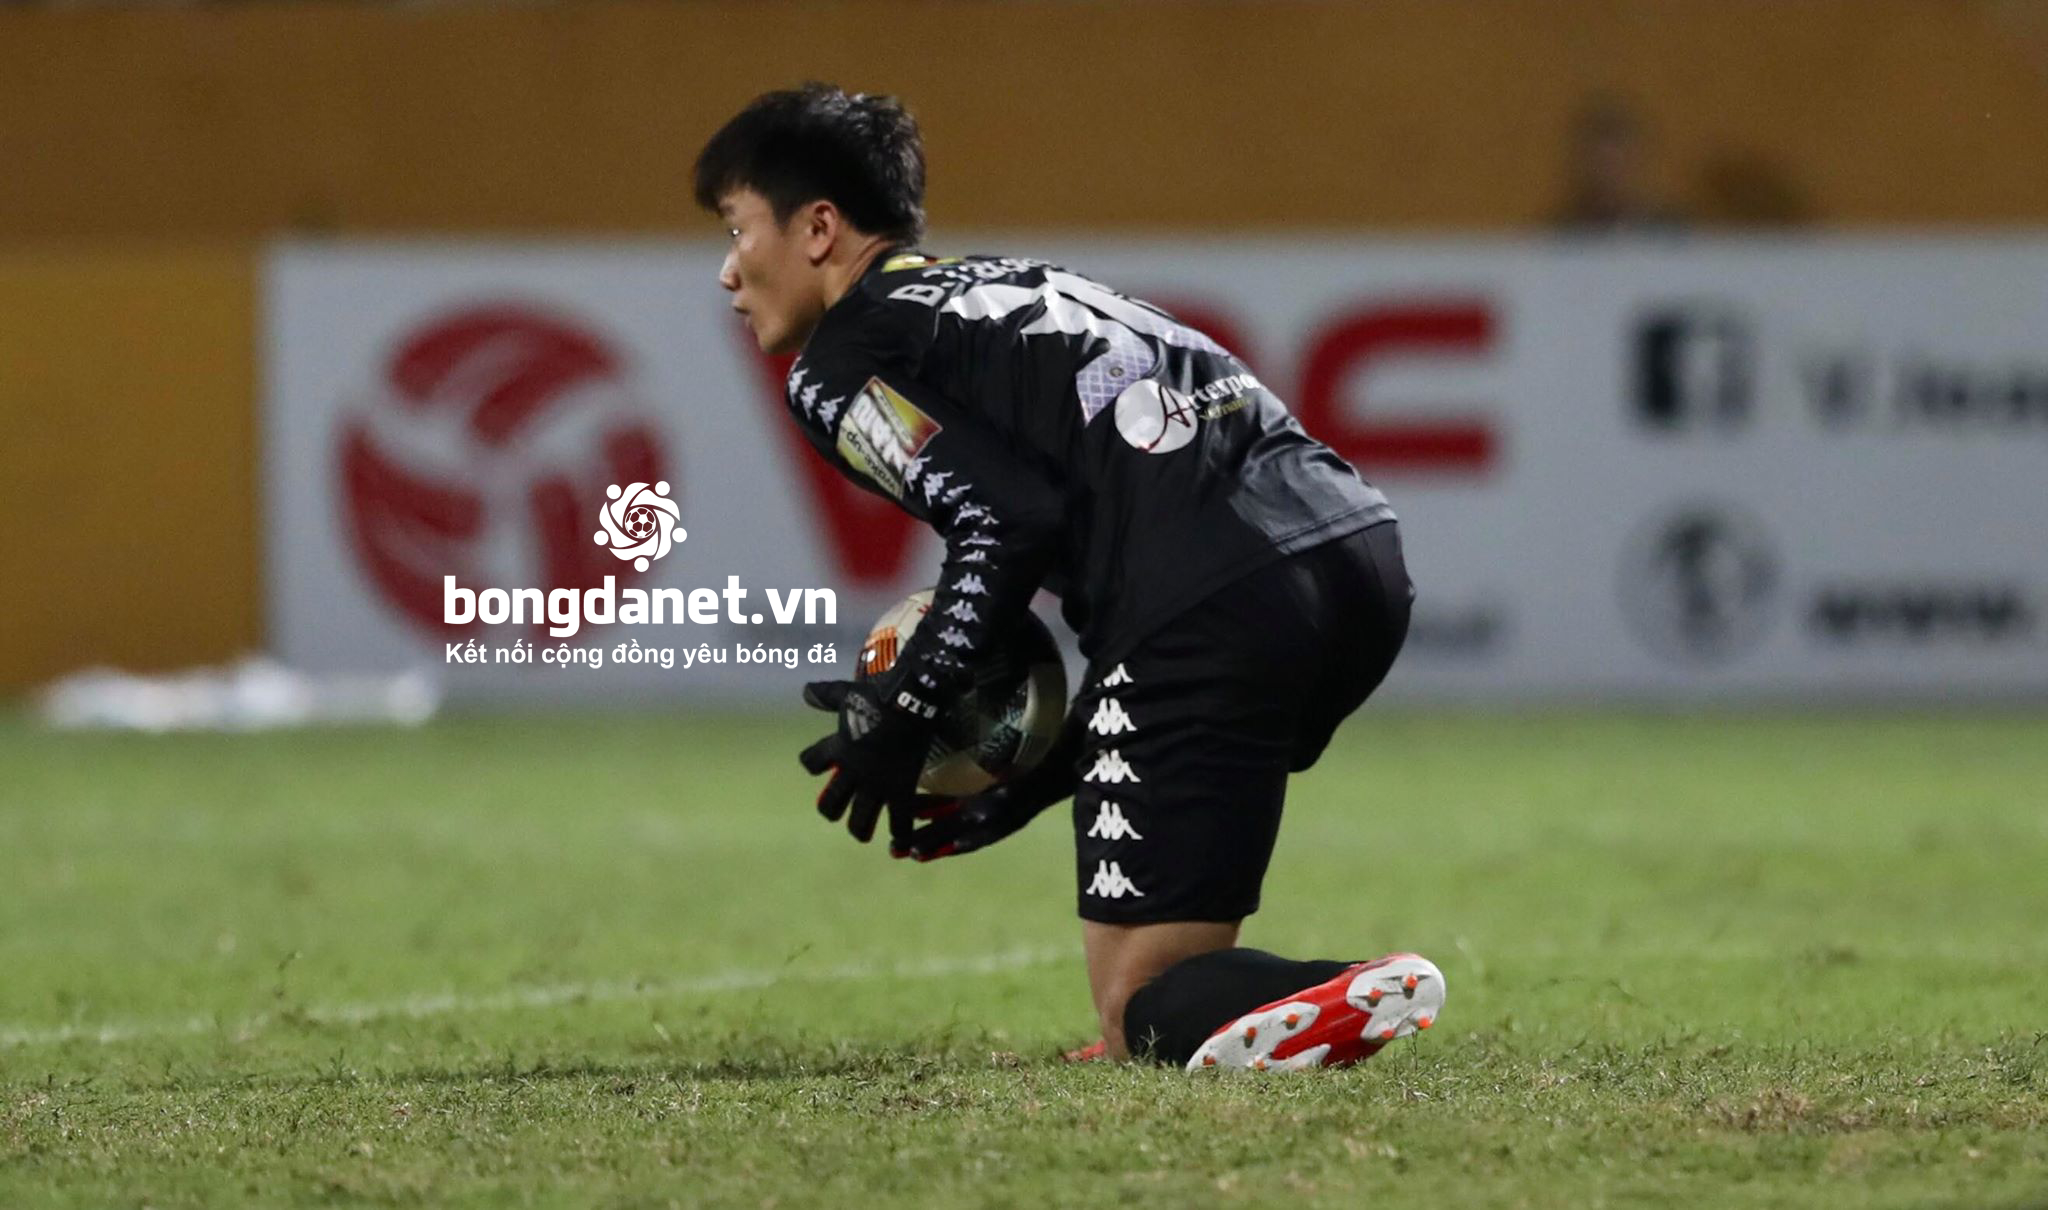 Chuyển nhượng V-League 2019: Thủ môn Bùi Tiến Dũng xin rời CLB Hà Nội